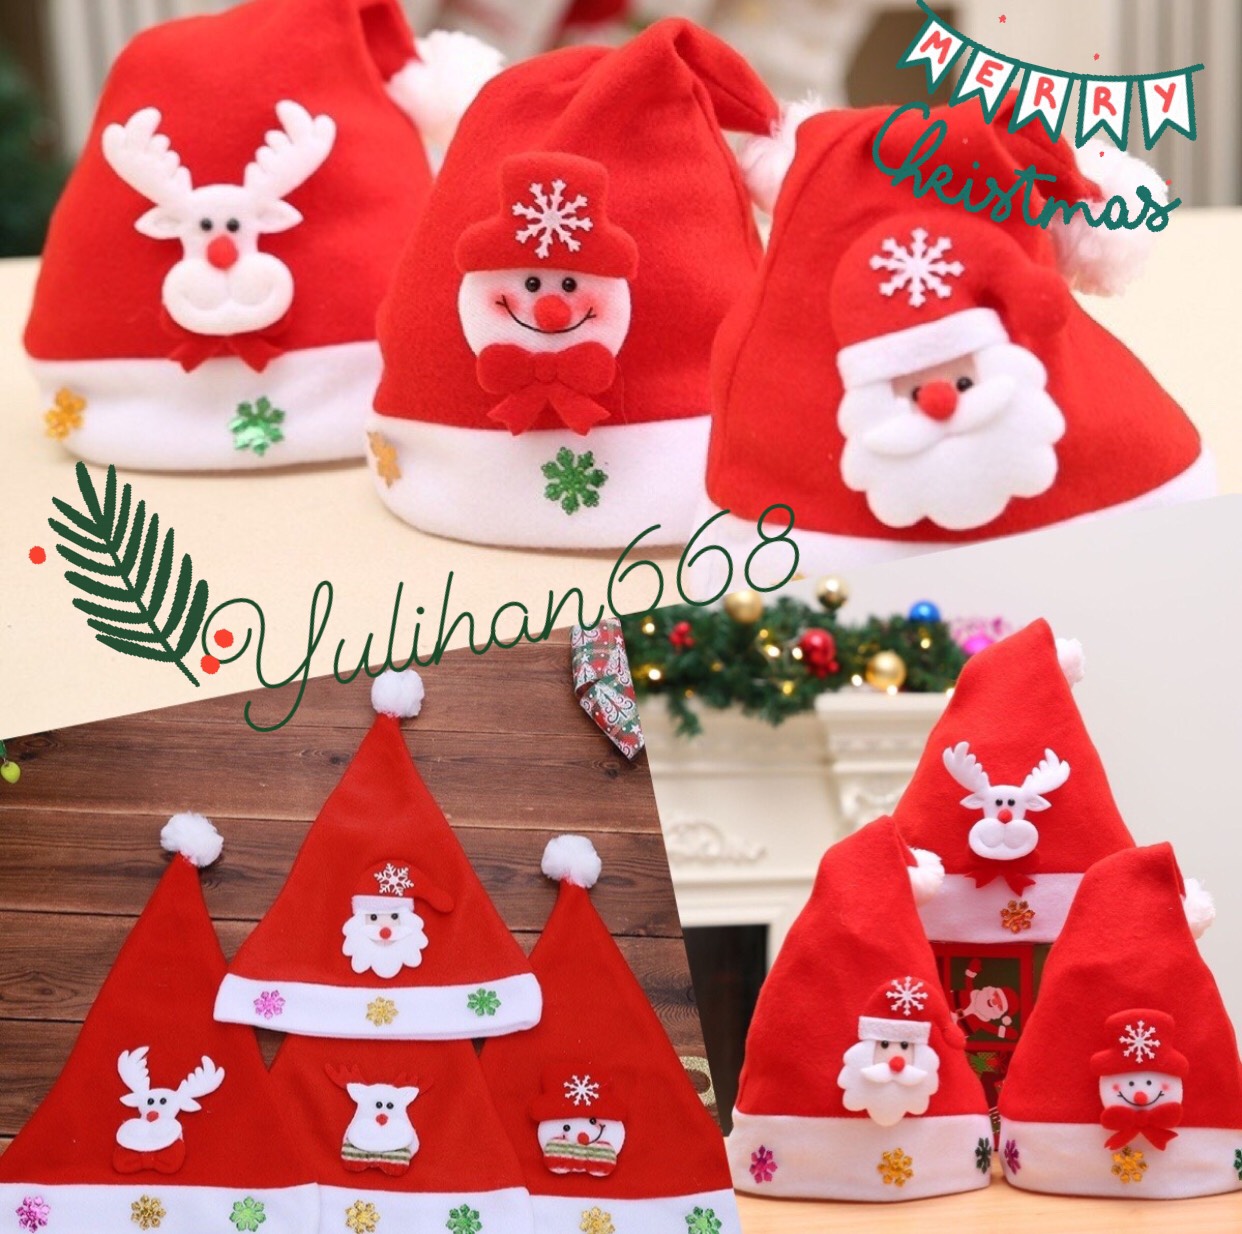 หมวกคริสมาส 🎄หมวกซานต้าครอสมีไฟ หมวกวันคริสมาสต์น่ารัก หมวกปีใหม่ หมวกซานต้าสีแดง🎅🏿